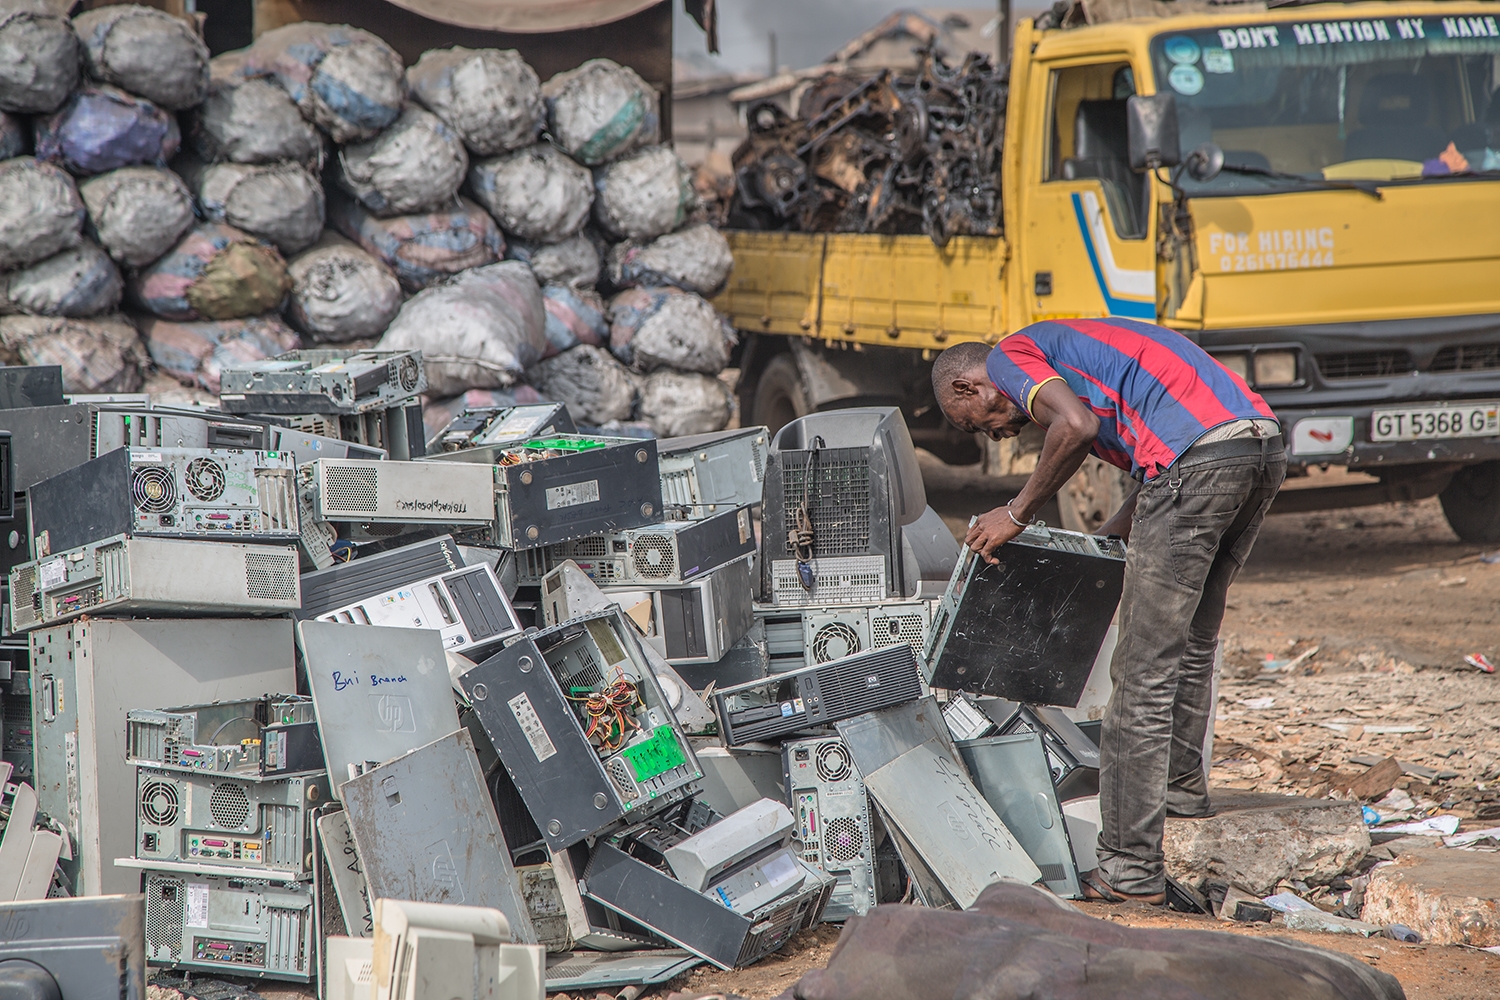 Image du documentaire "welcome to sodom" montrant un africain penché sur un tas d'ordinateurs fixes en vrac sur un sol de terre en plein air